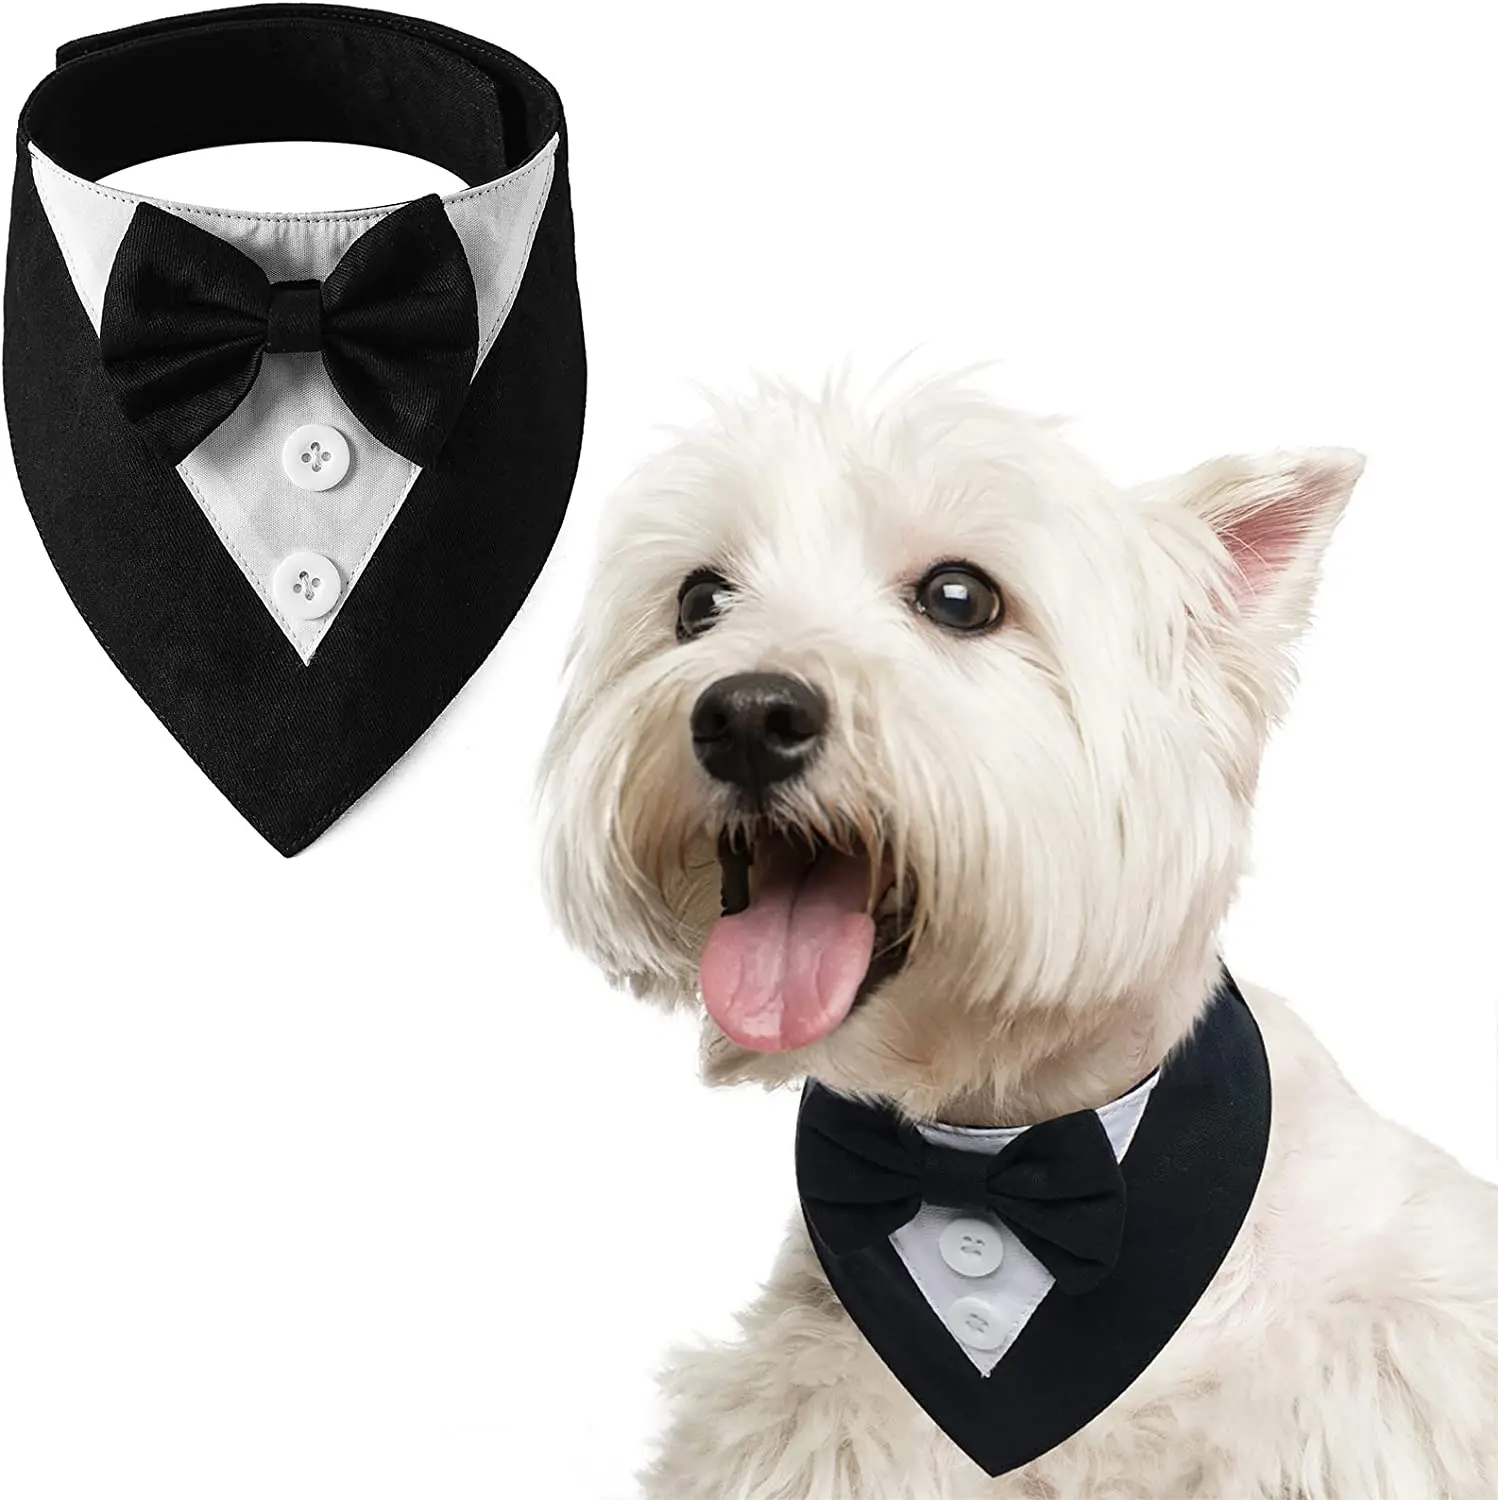 Dog Tuxedo Formal Dog Wedding Bandana with Bow Tie Dog Birthday Costume Adjustable Pet Party Tux Dog Wedding Attire Dog Scarf